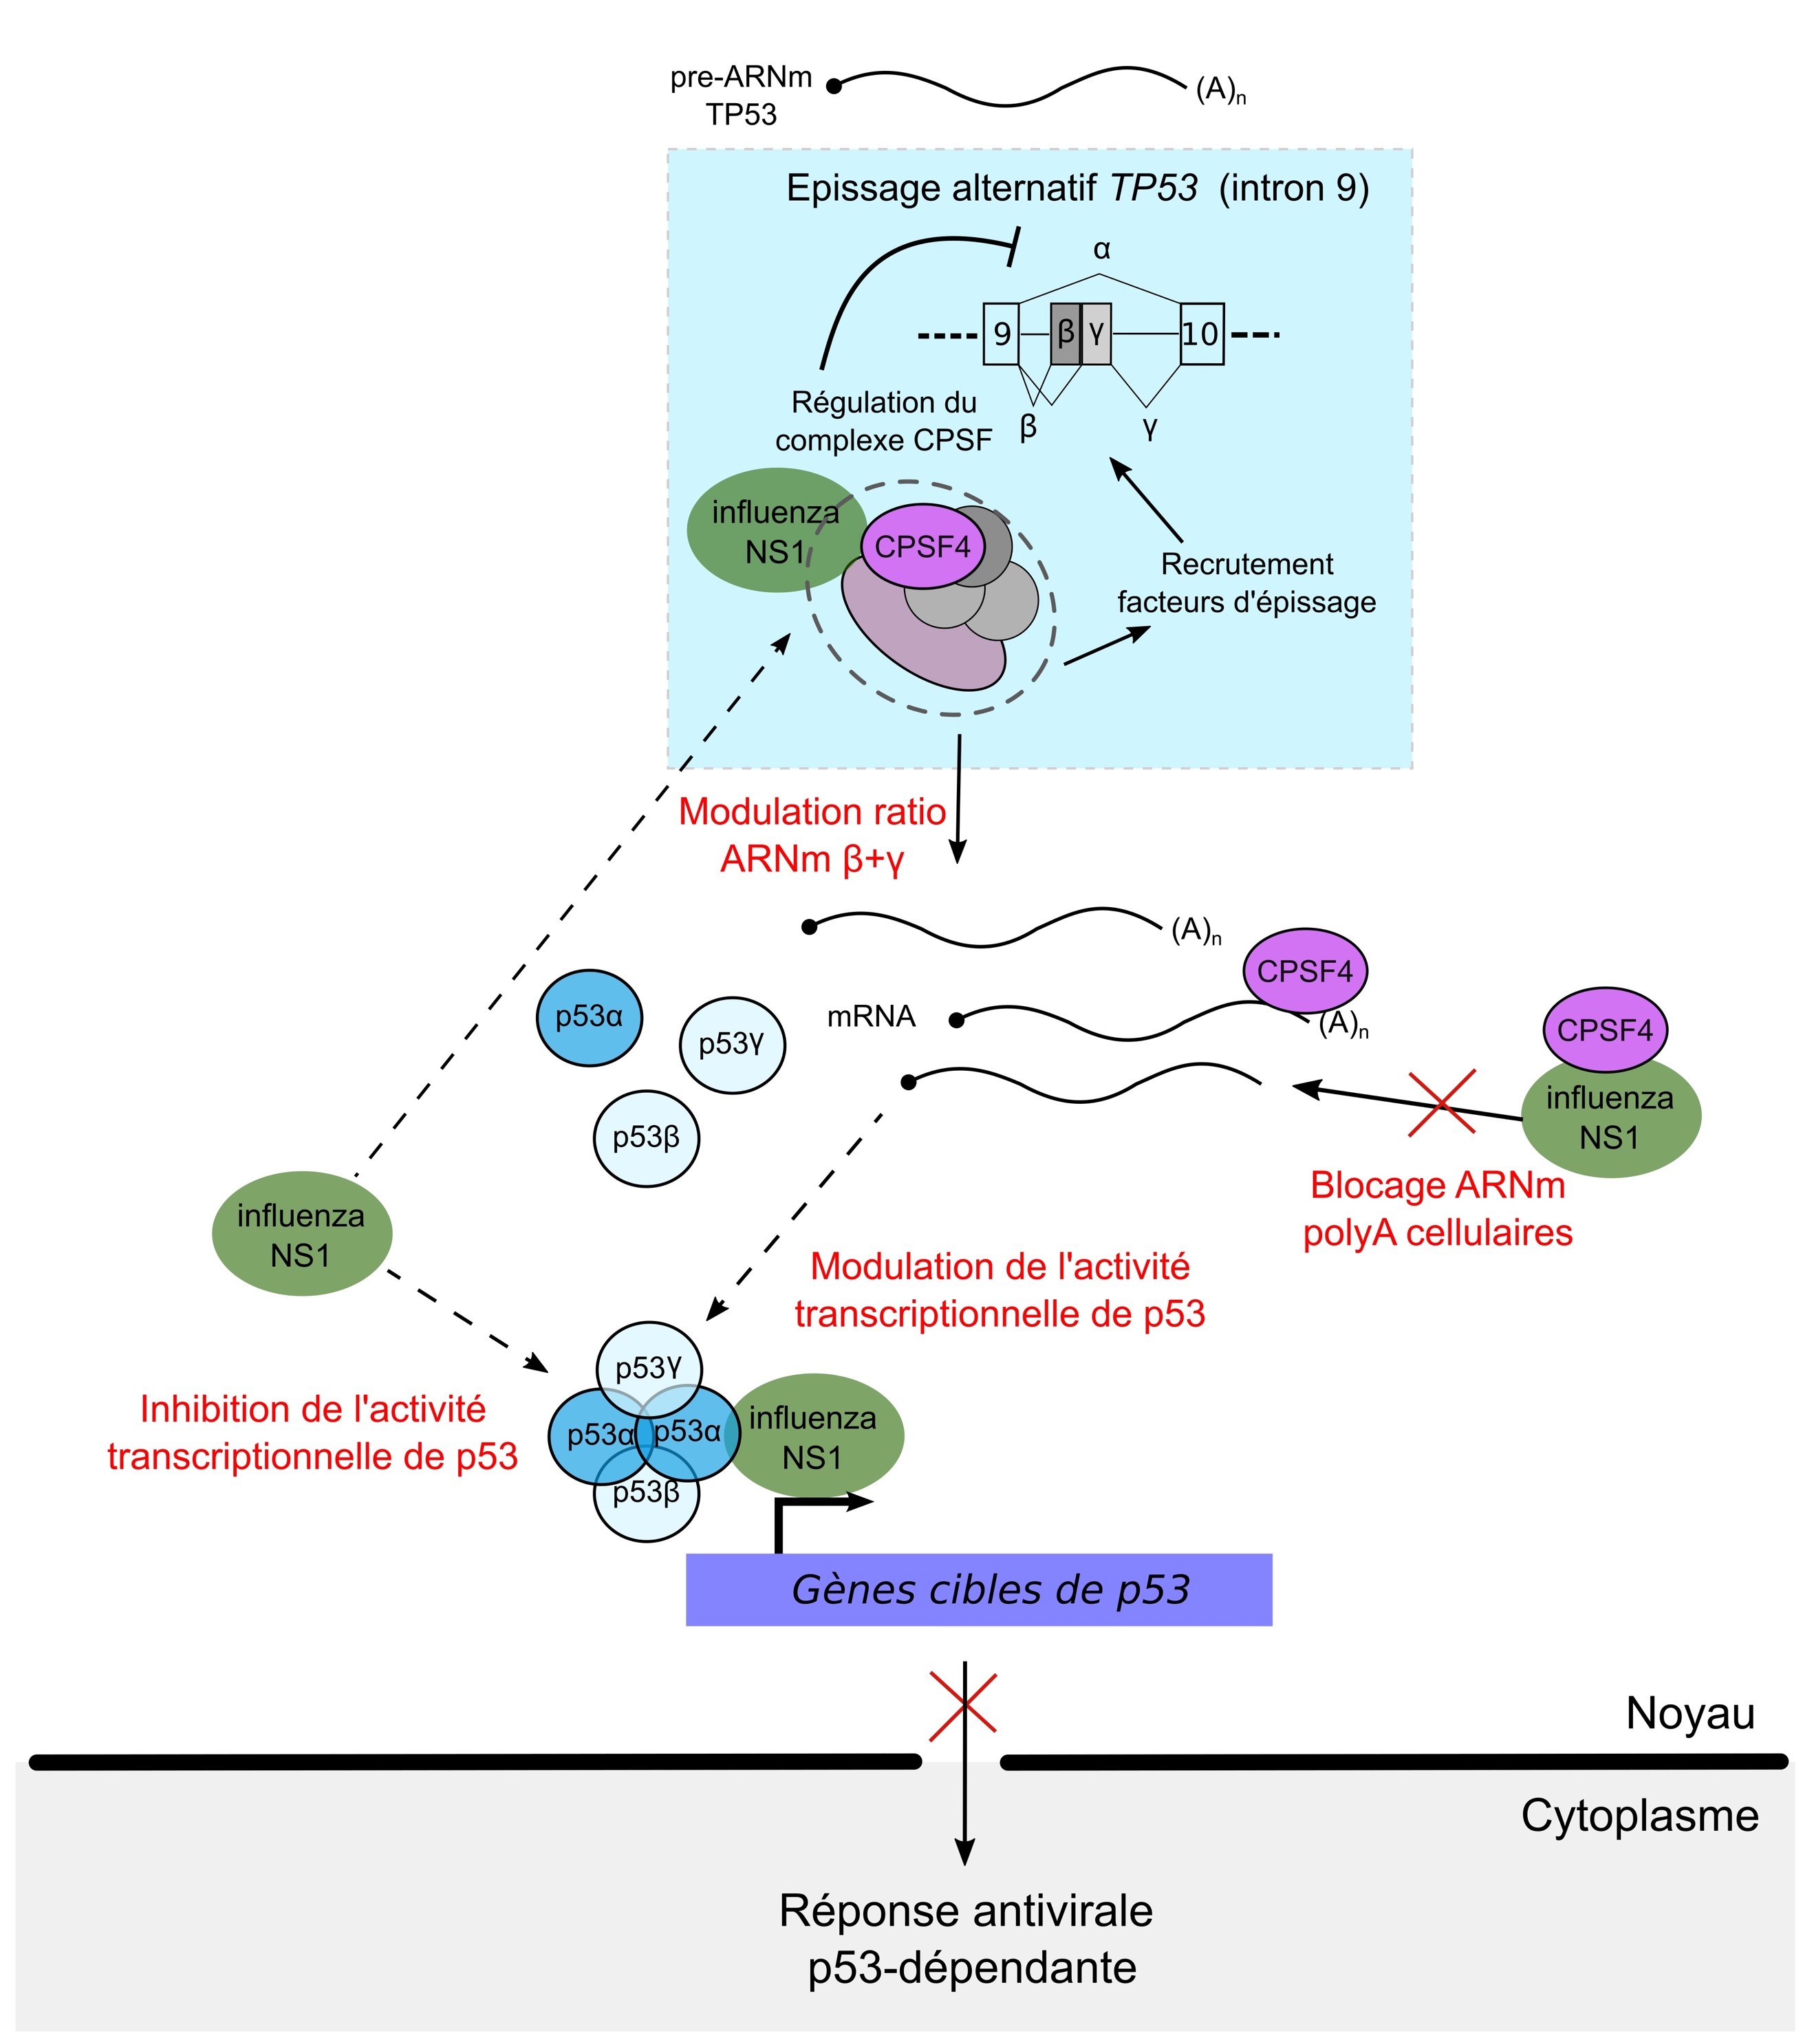  Lors de l’infection, la protéine virale NS1 inhibe l’activité transcriptionnelle de p53 via son interaction avec p53, mais également par la modulation de l’épissage de TP53, en affectant les fonctions du facteur cellulaire CPSF4, au niveau des mécanismes d’épissage et de la maturation des ARNm. En conséquence, la modulation du ratio des isoformes de p53 a un impact sur l’activité transcriptionnelle de p53, et notamment sur la régulation de nombreux gènes impliqués dans la réponse antivirale.